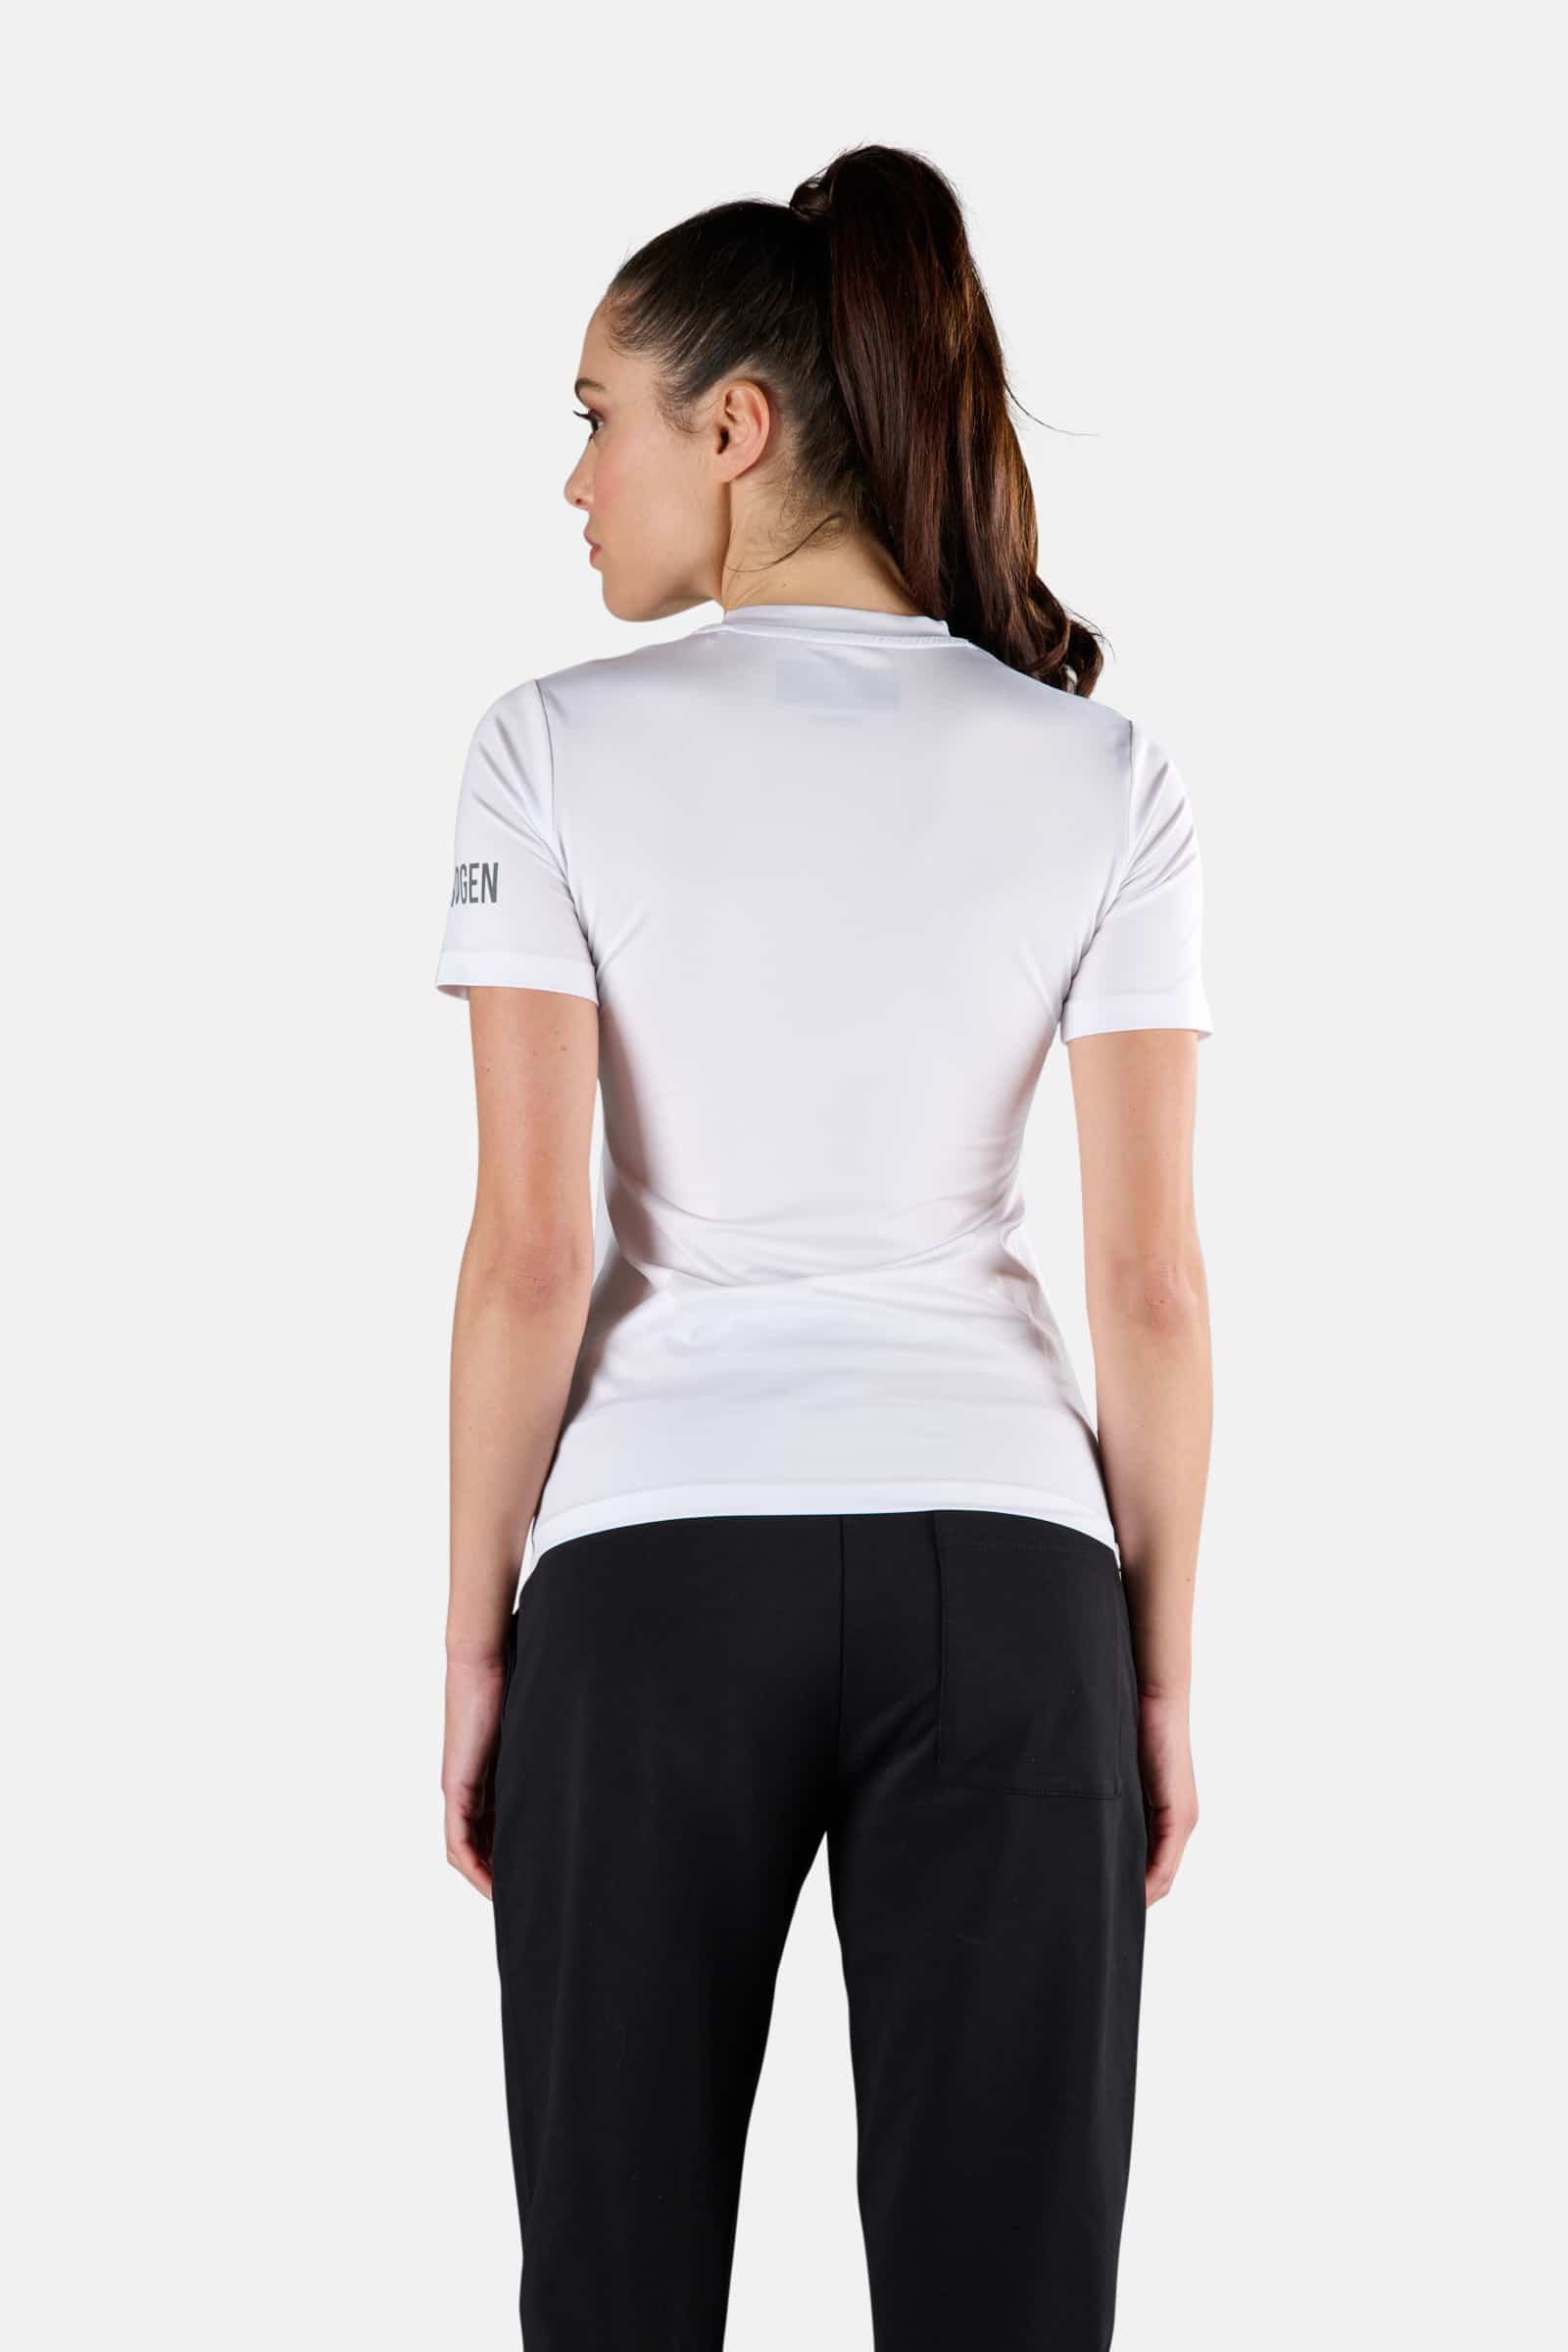 TECH TEE - WHITE - Abbigliamento sportivo | Hydrogen